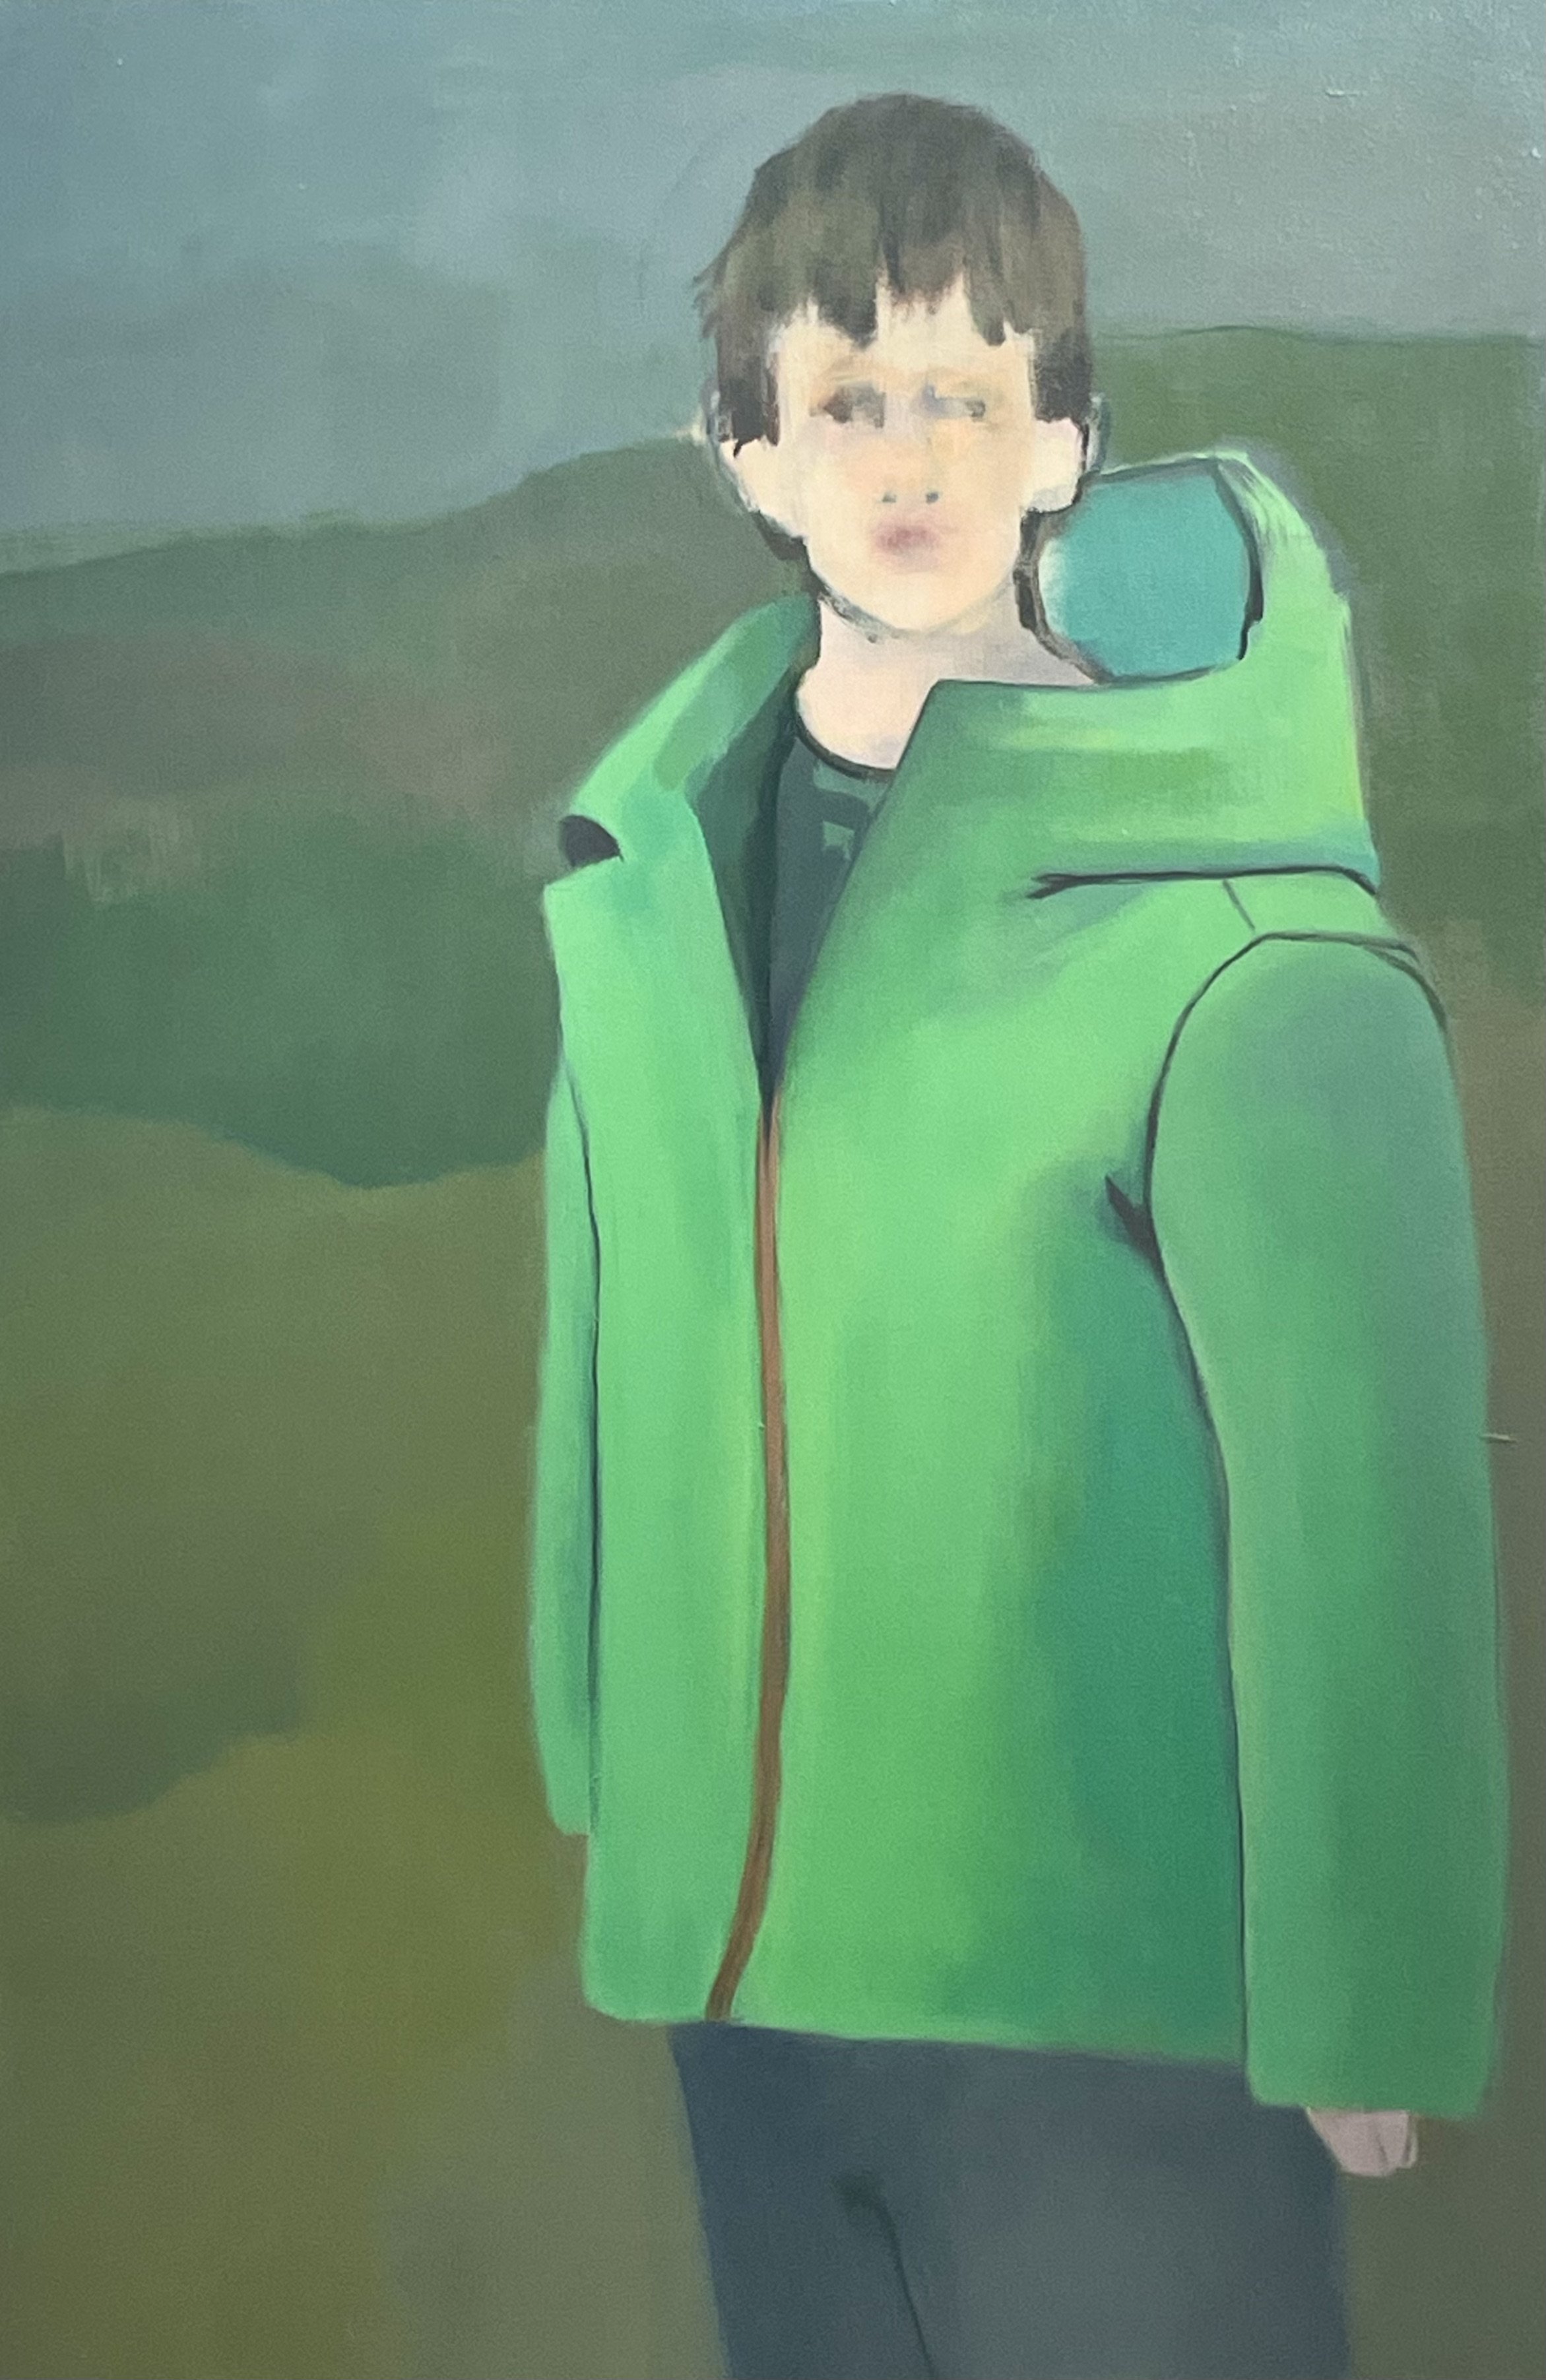 Boy in a Green Jacket